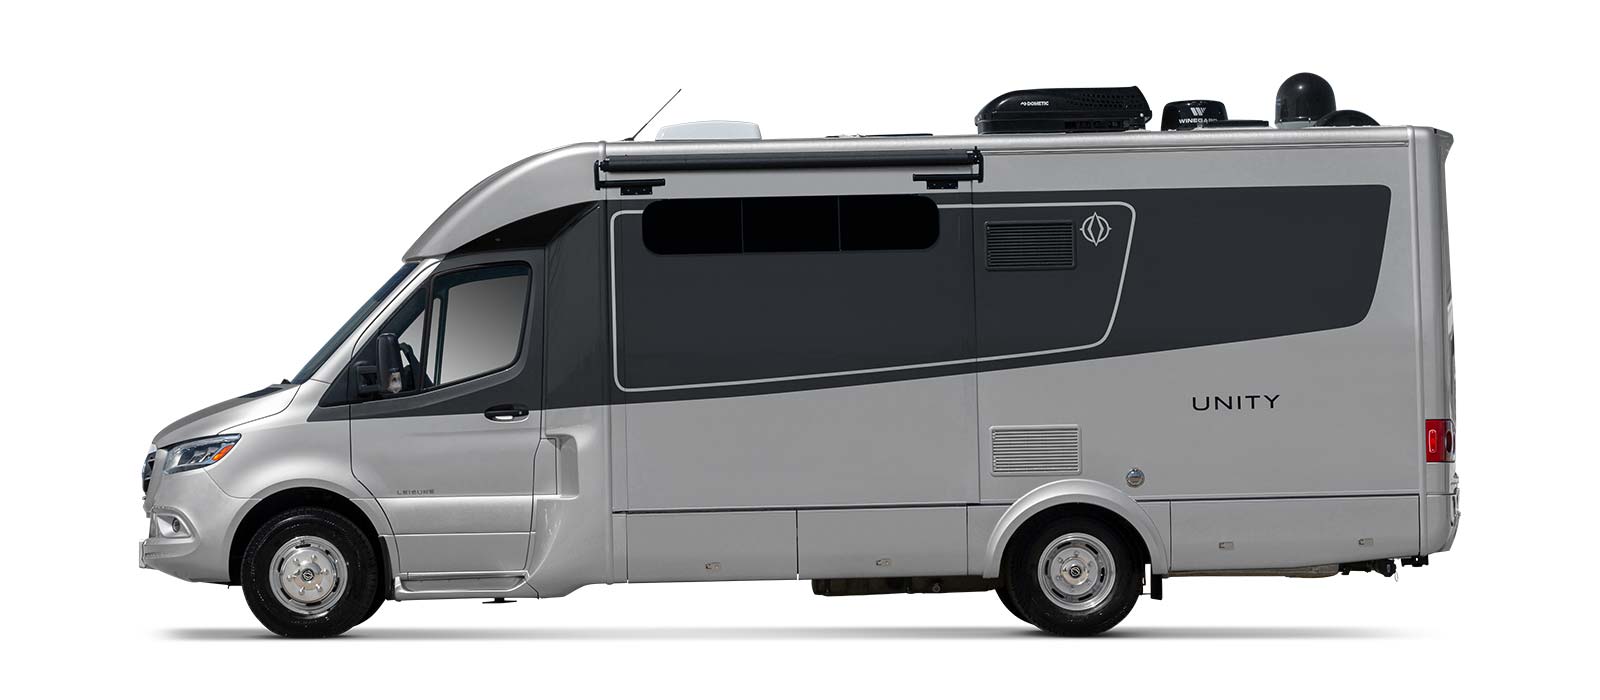 Unity - Storage - FX - Leisure Travel Vans